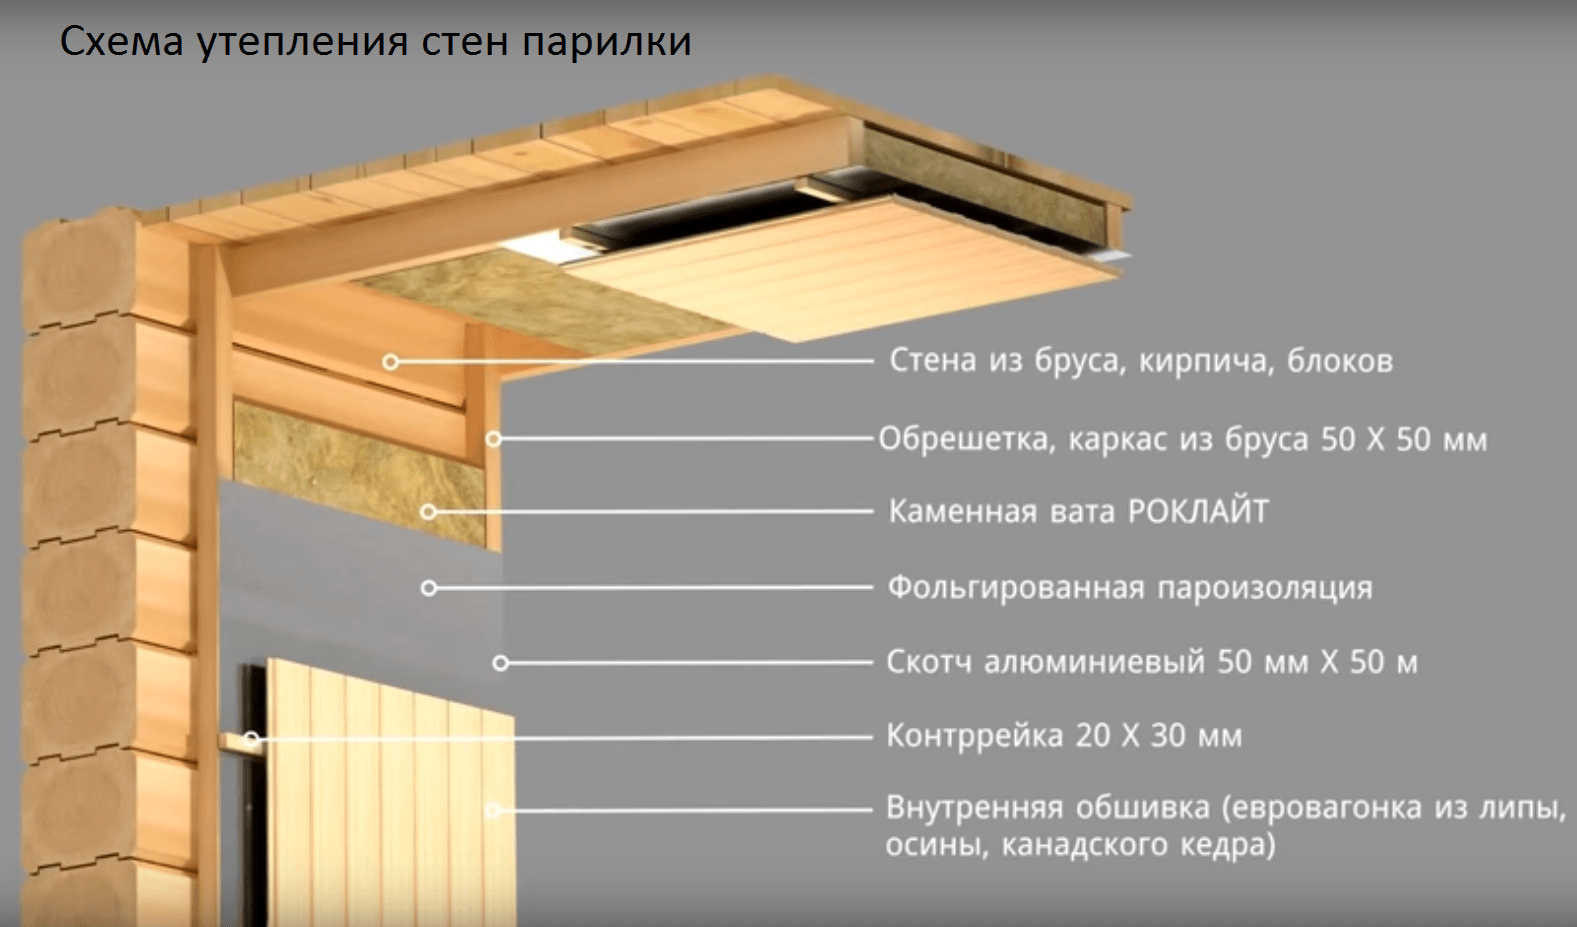 Какой стороной укладывать пароизоляцию внутри помещения на потолок, на пол, на крыше, на стены: инструкция